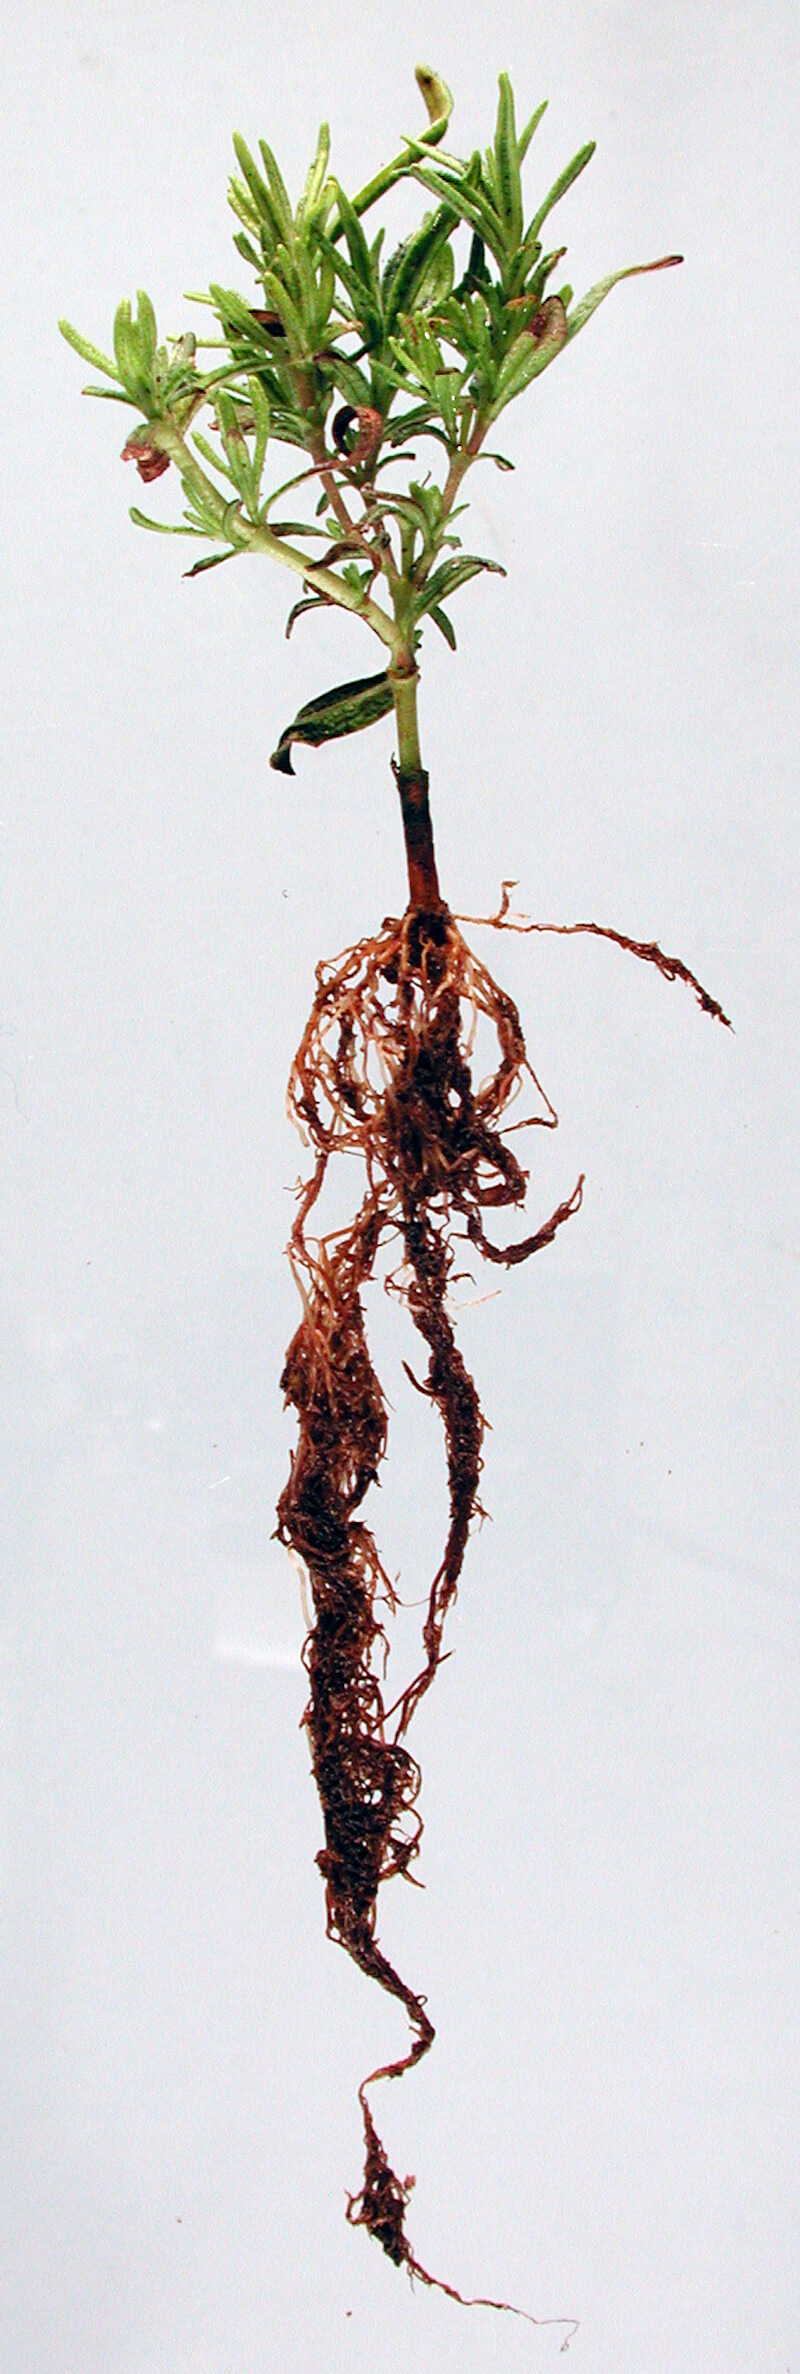 Hình ảnh của một cây Hương Thảo bị thối gốc (Root Rot) cấp độ nặng. Ảnh: OSU Plant Clinic 2011